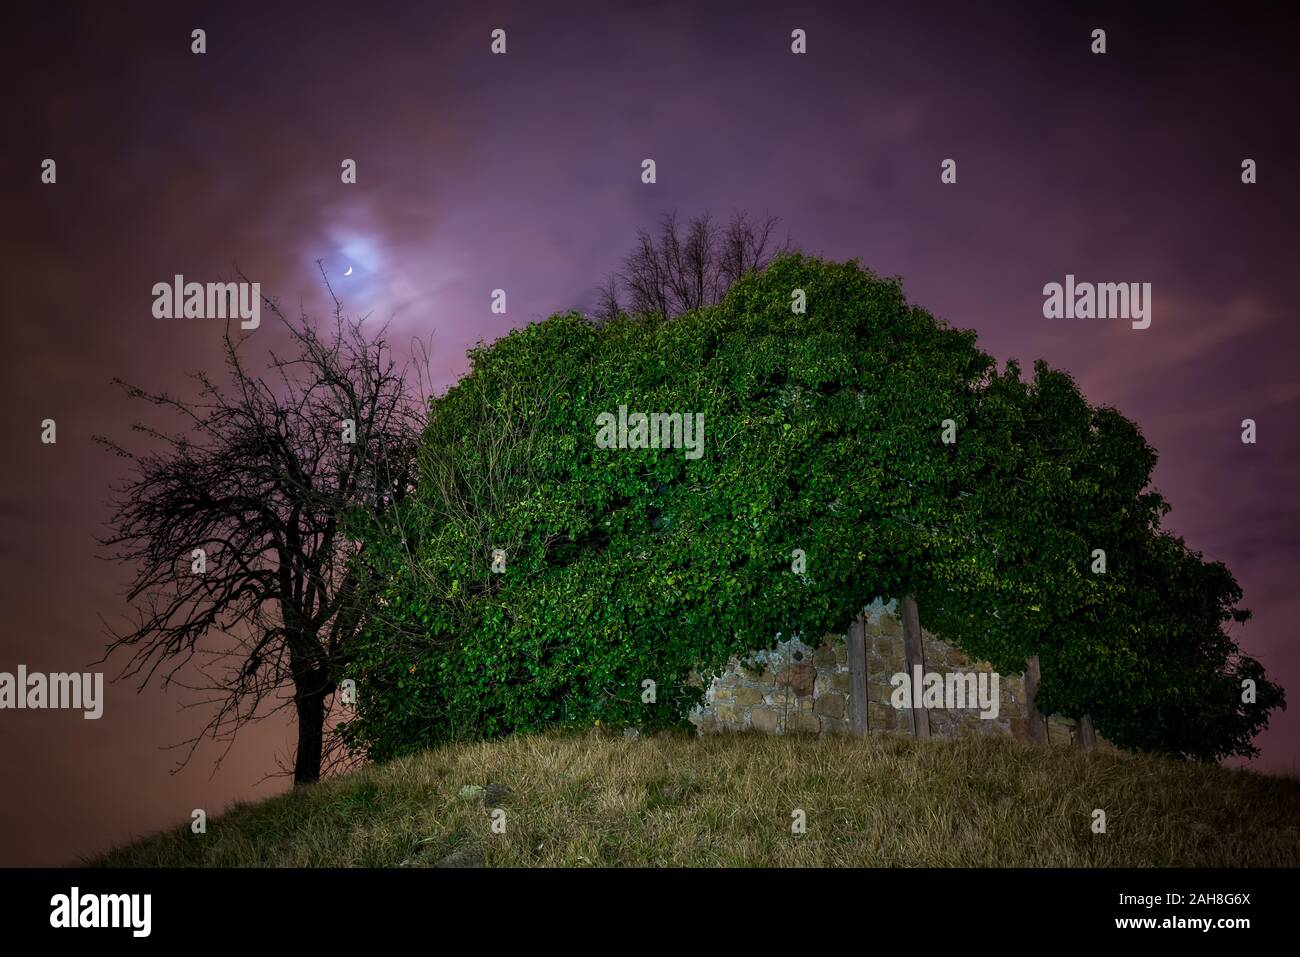 Amplio ángulo de vista de un árbol muerto y una iglesia cubierta de hiedra en la cima de una colina, bajo una luna llena en un cielo púrpura Foto de stock